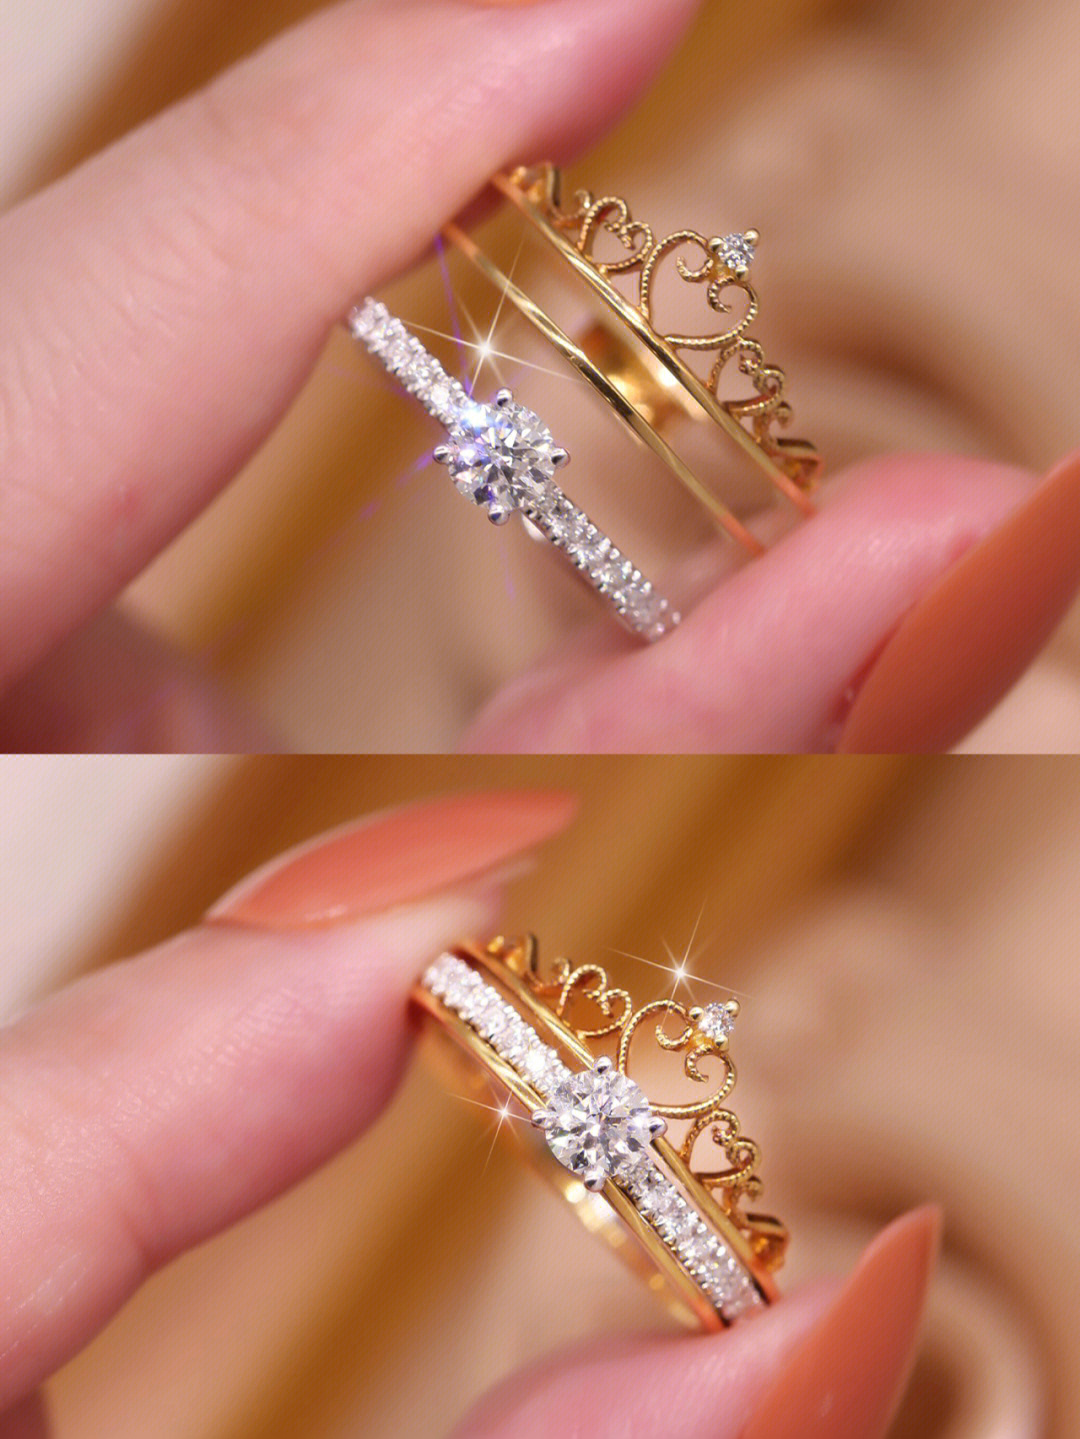 女人戴皇冠戒指的意义图片